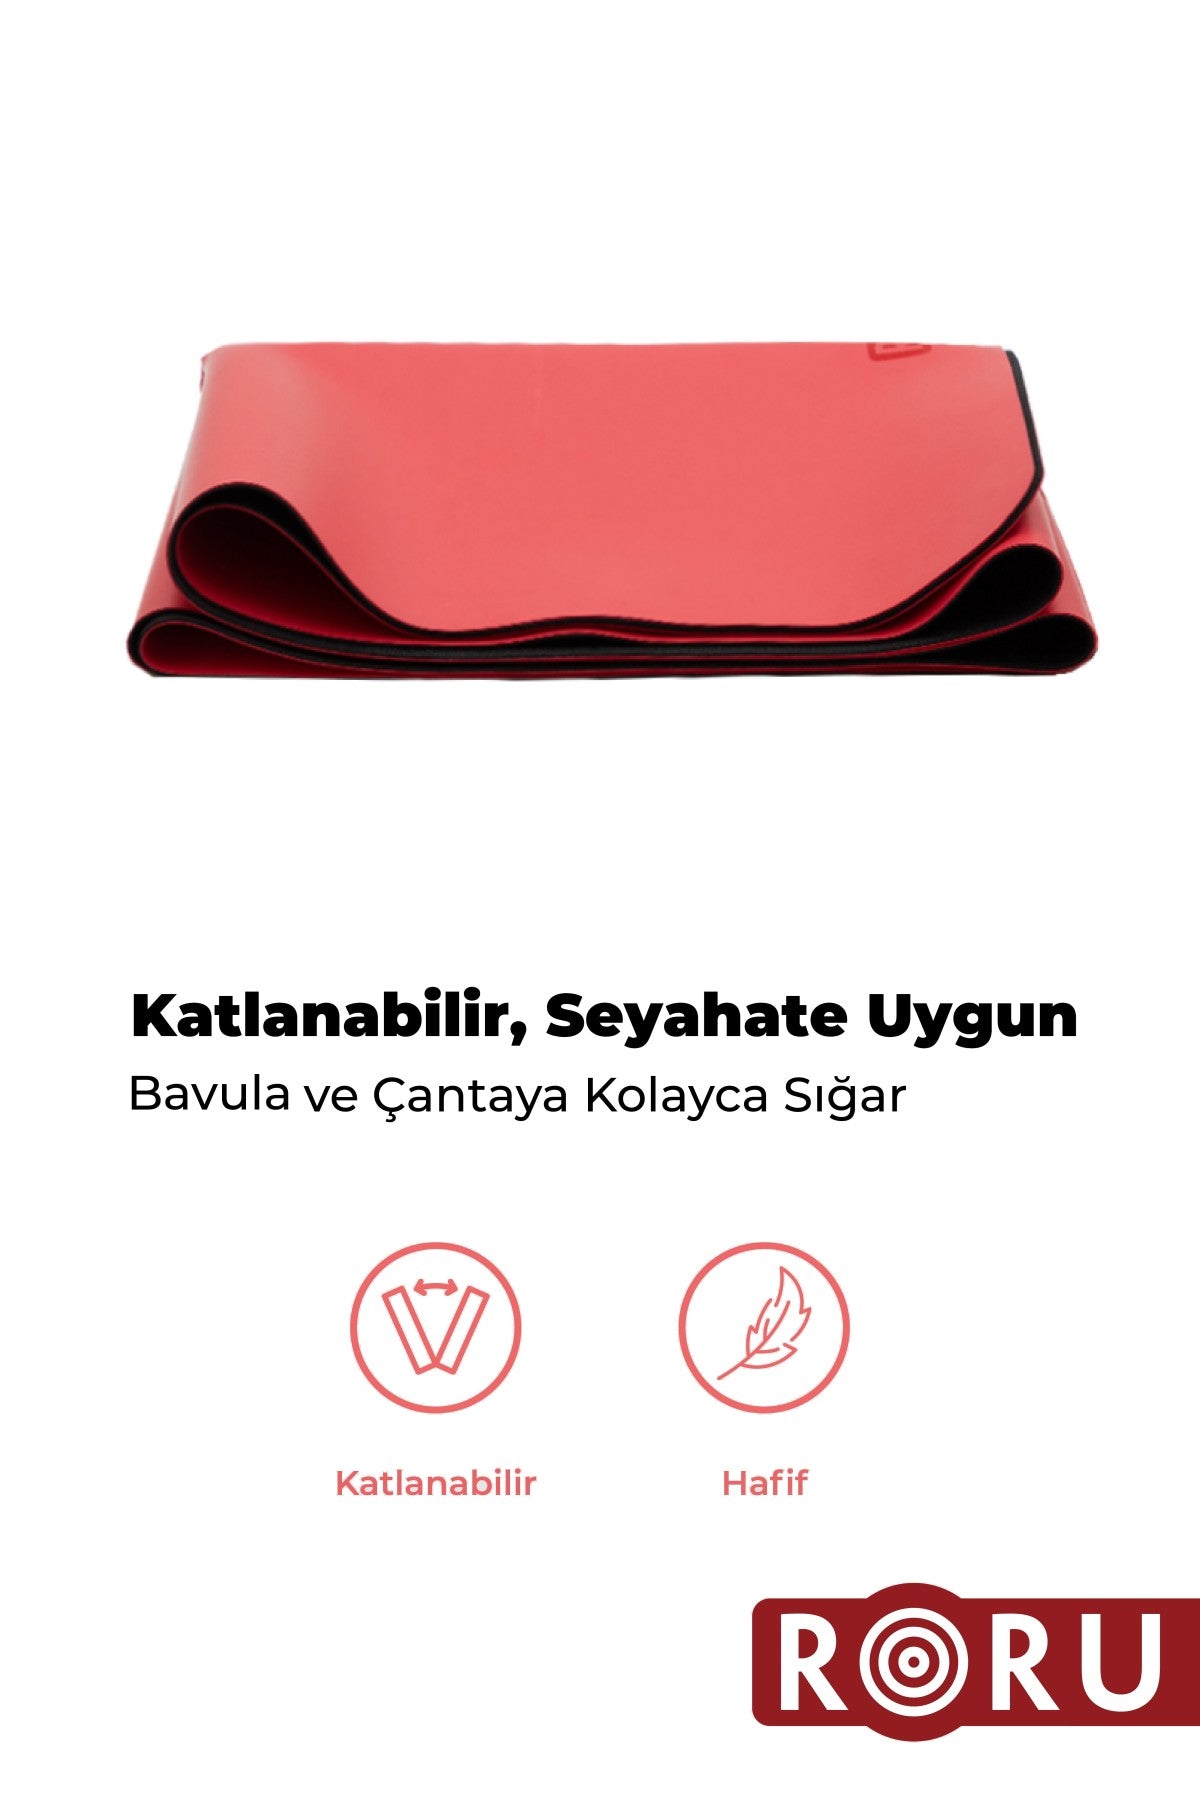 Roru Concept Sun Kaydırmaz Yoga Egzersiz Matı 183 x 68 cm 2.5 mm Kuru - Nemli Eller İçin, Doğal Kauçuk, Kırmızı